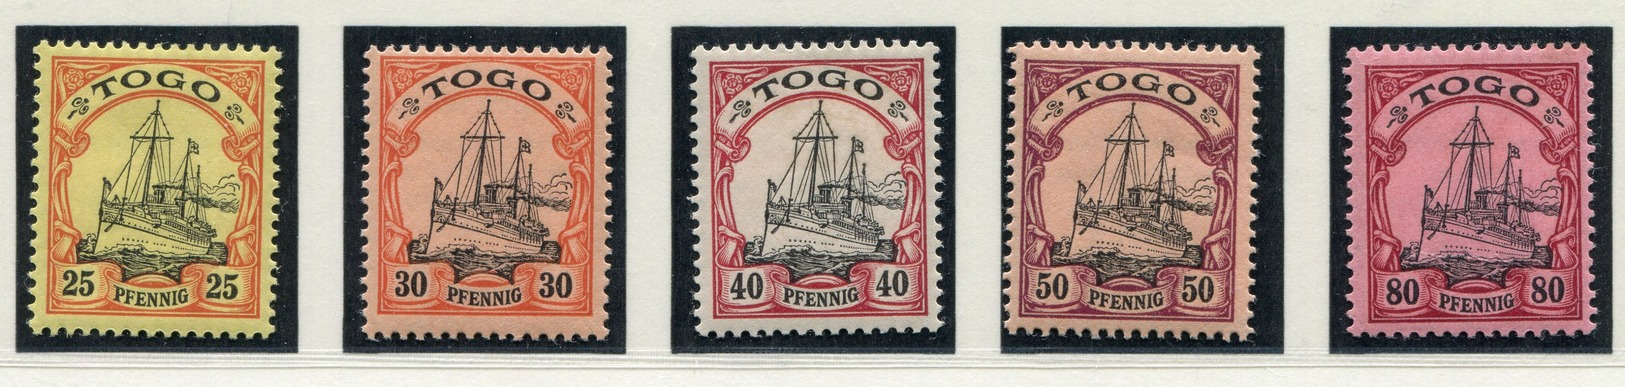 Deutsche Kolonie  (Togo)    Mi.  7-19 ** Geprüft BOTHE BPP    EUR 580       Siehe Bild - Togo